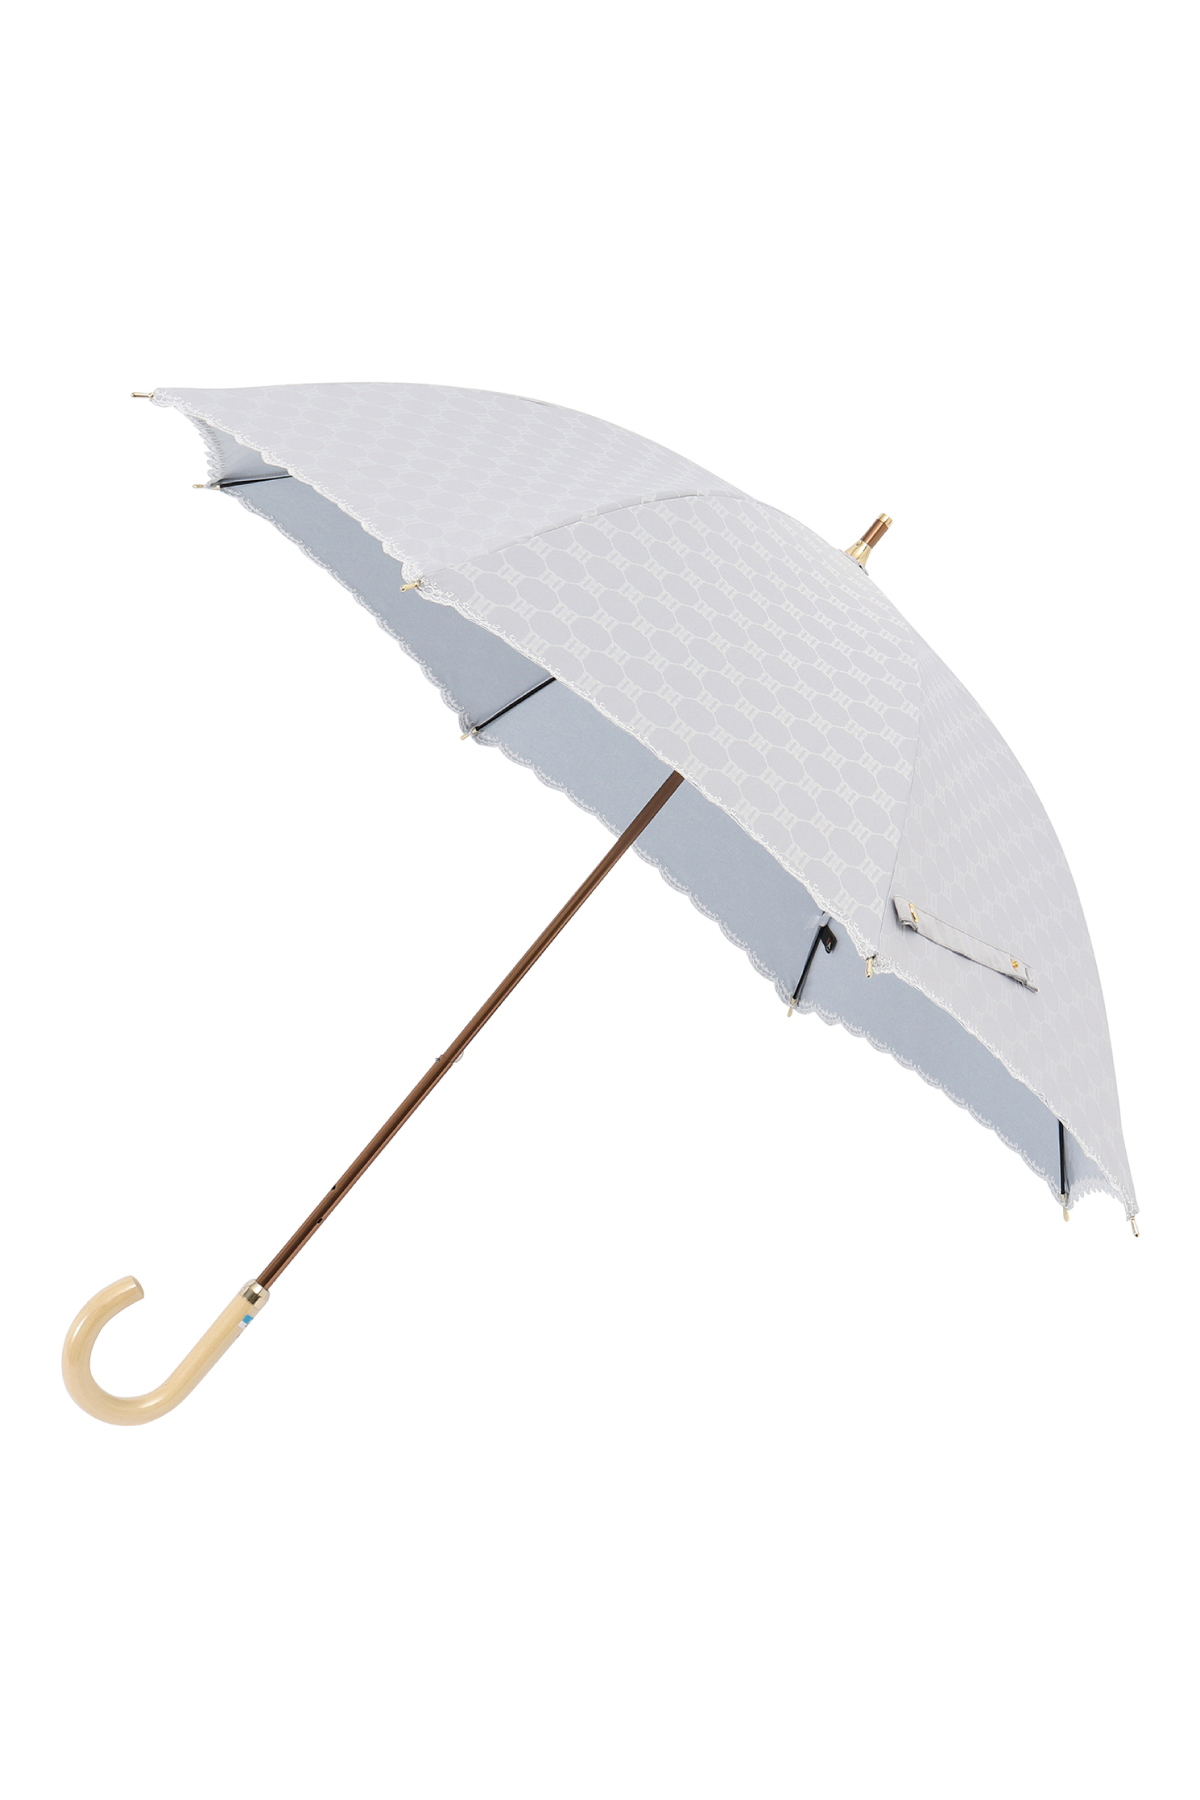 【日傘】ショート傘ロゴジャカード刺繍 詳細画像 11/ライトグレー